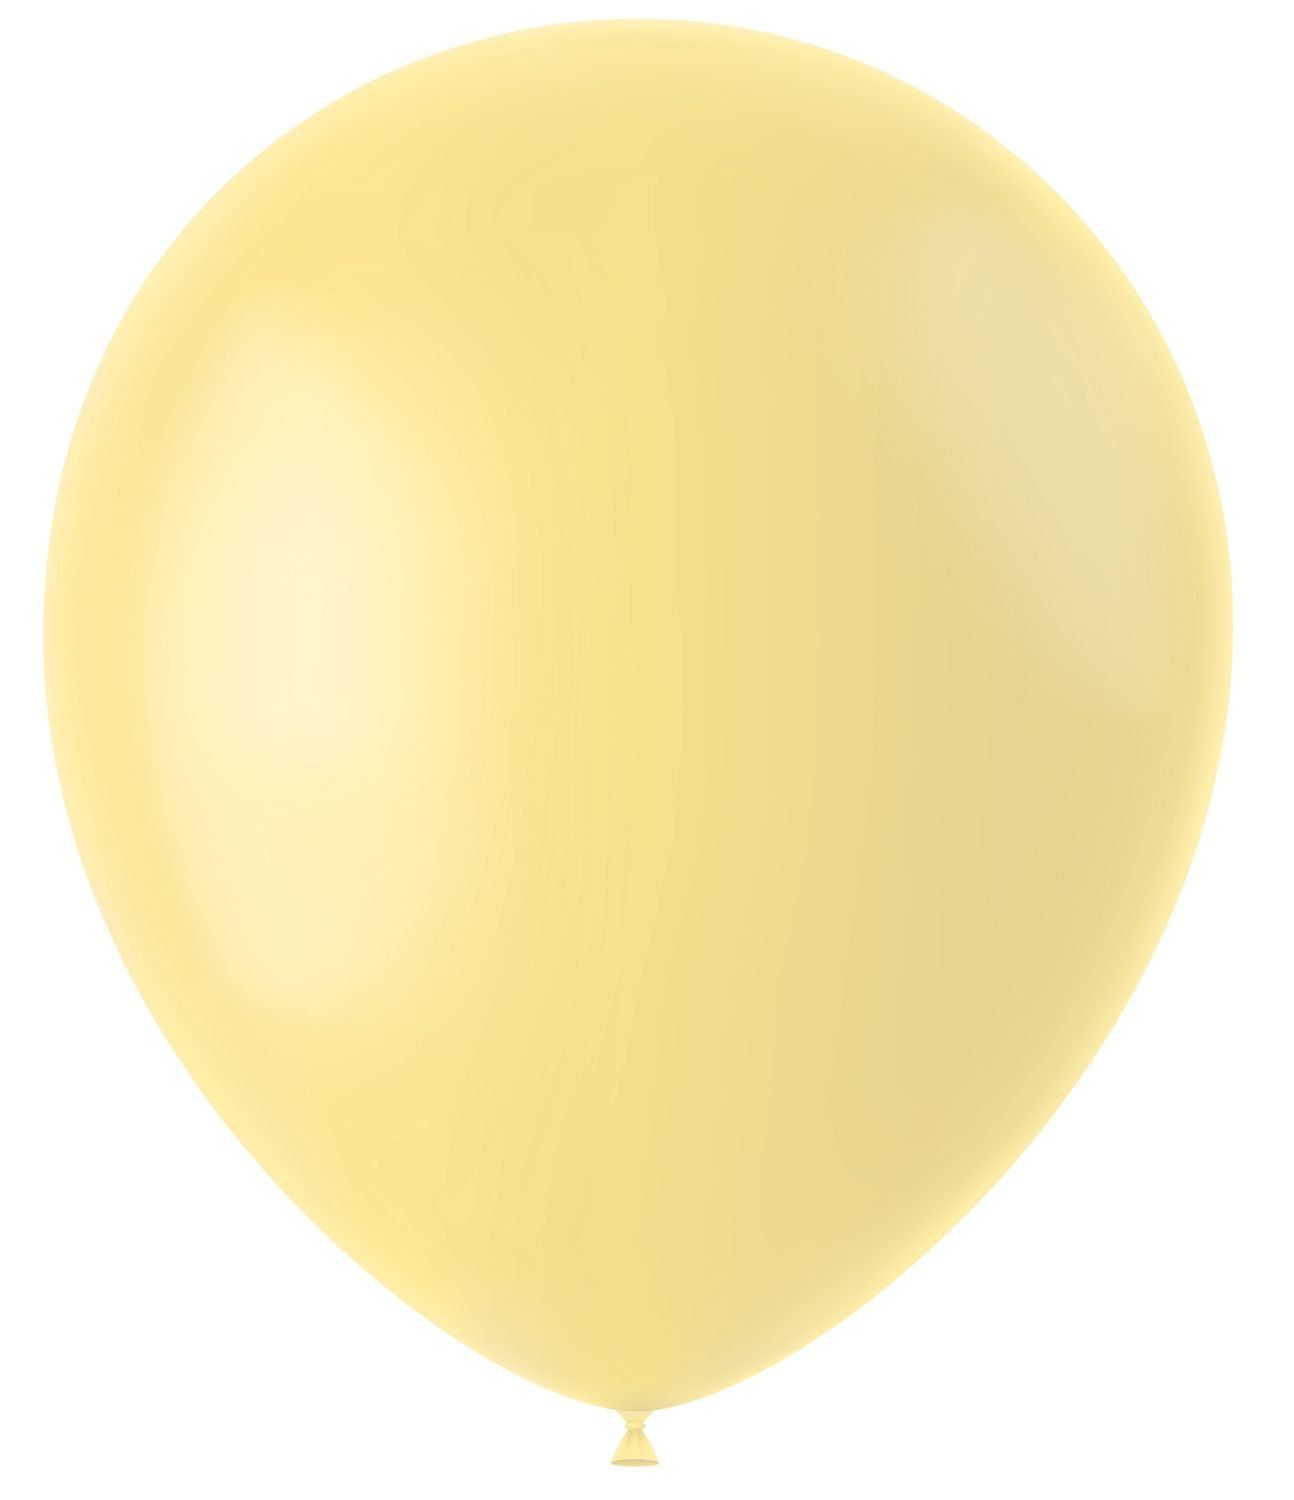 Lichtgele ballonnen matte kleur